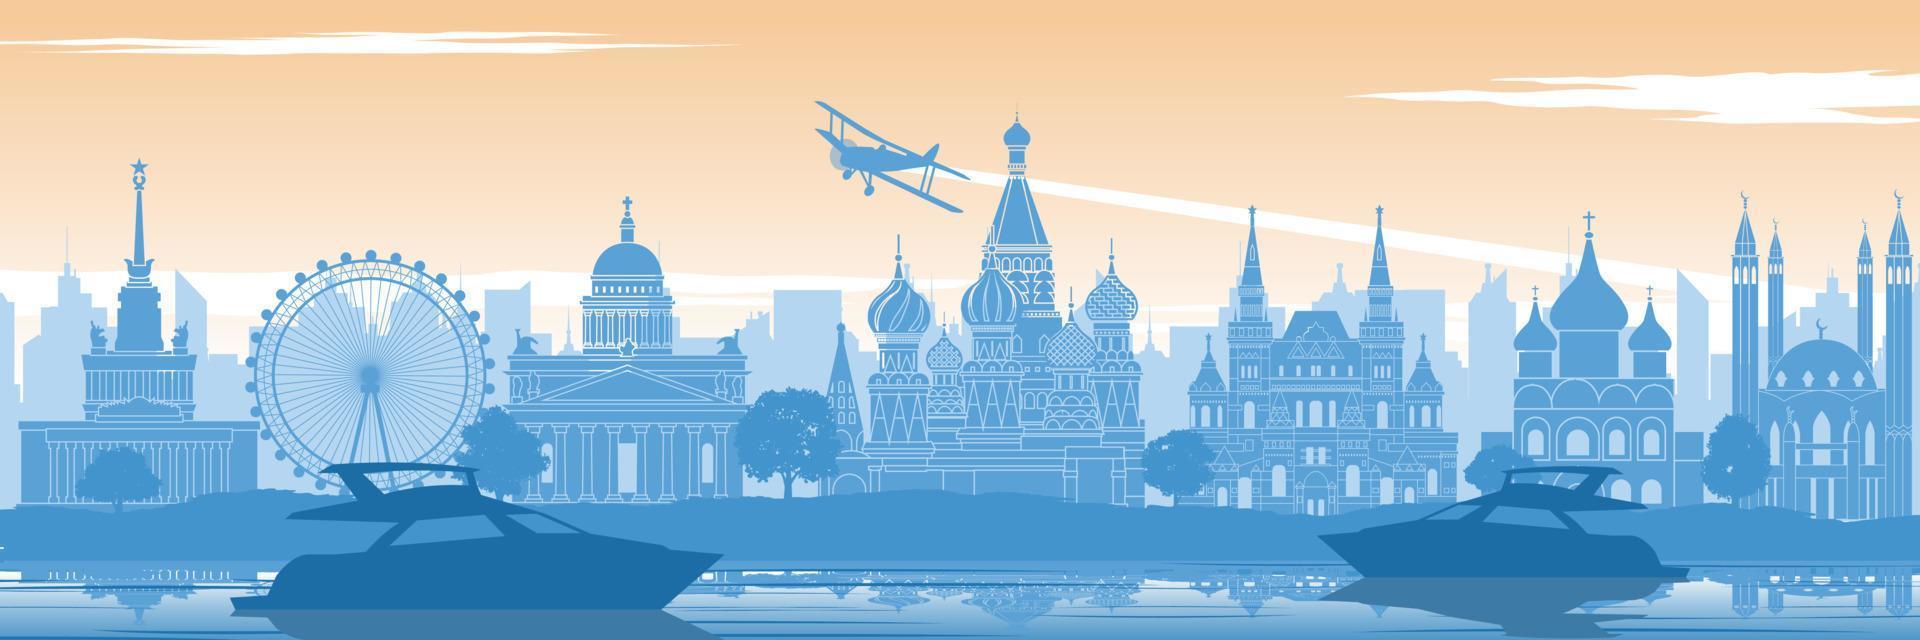 Rysslands berömda landmärke på baksidan av floden och yacht i siluettdesign i landskapsstil i blå och orangegul färg vektor